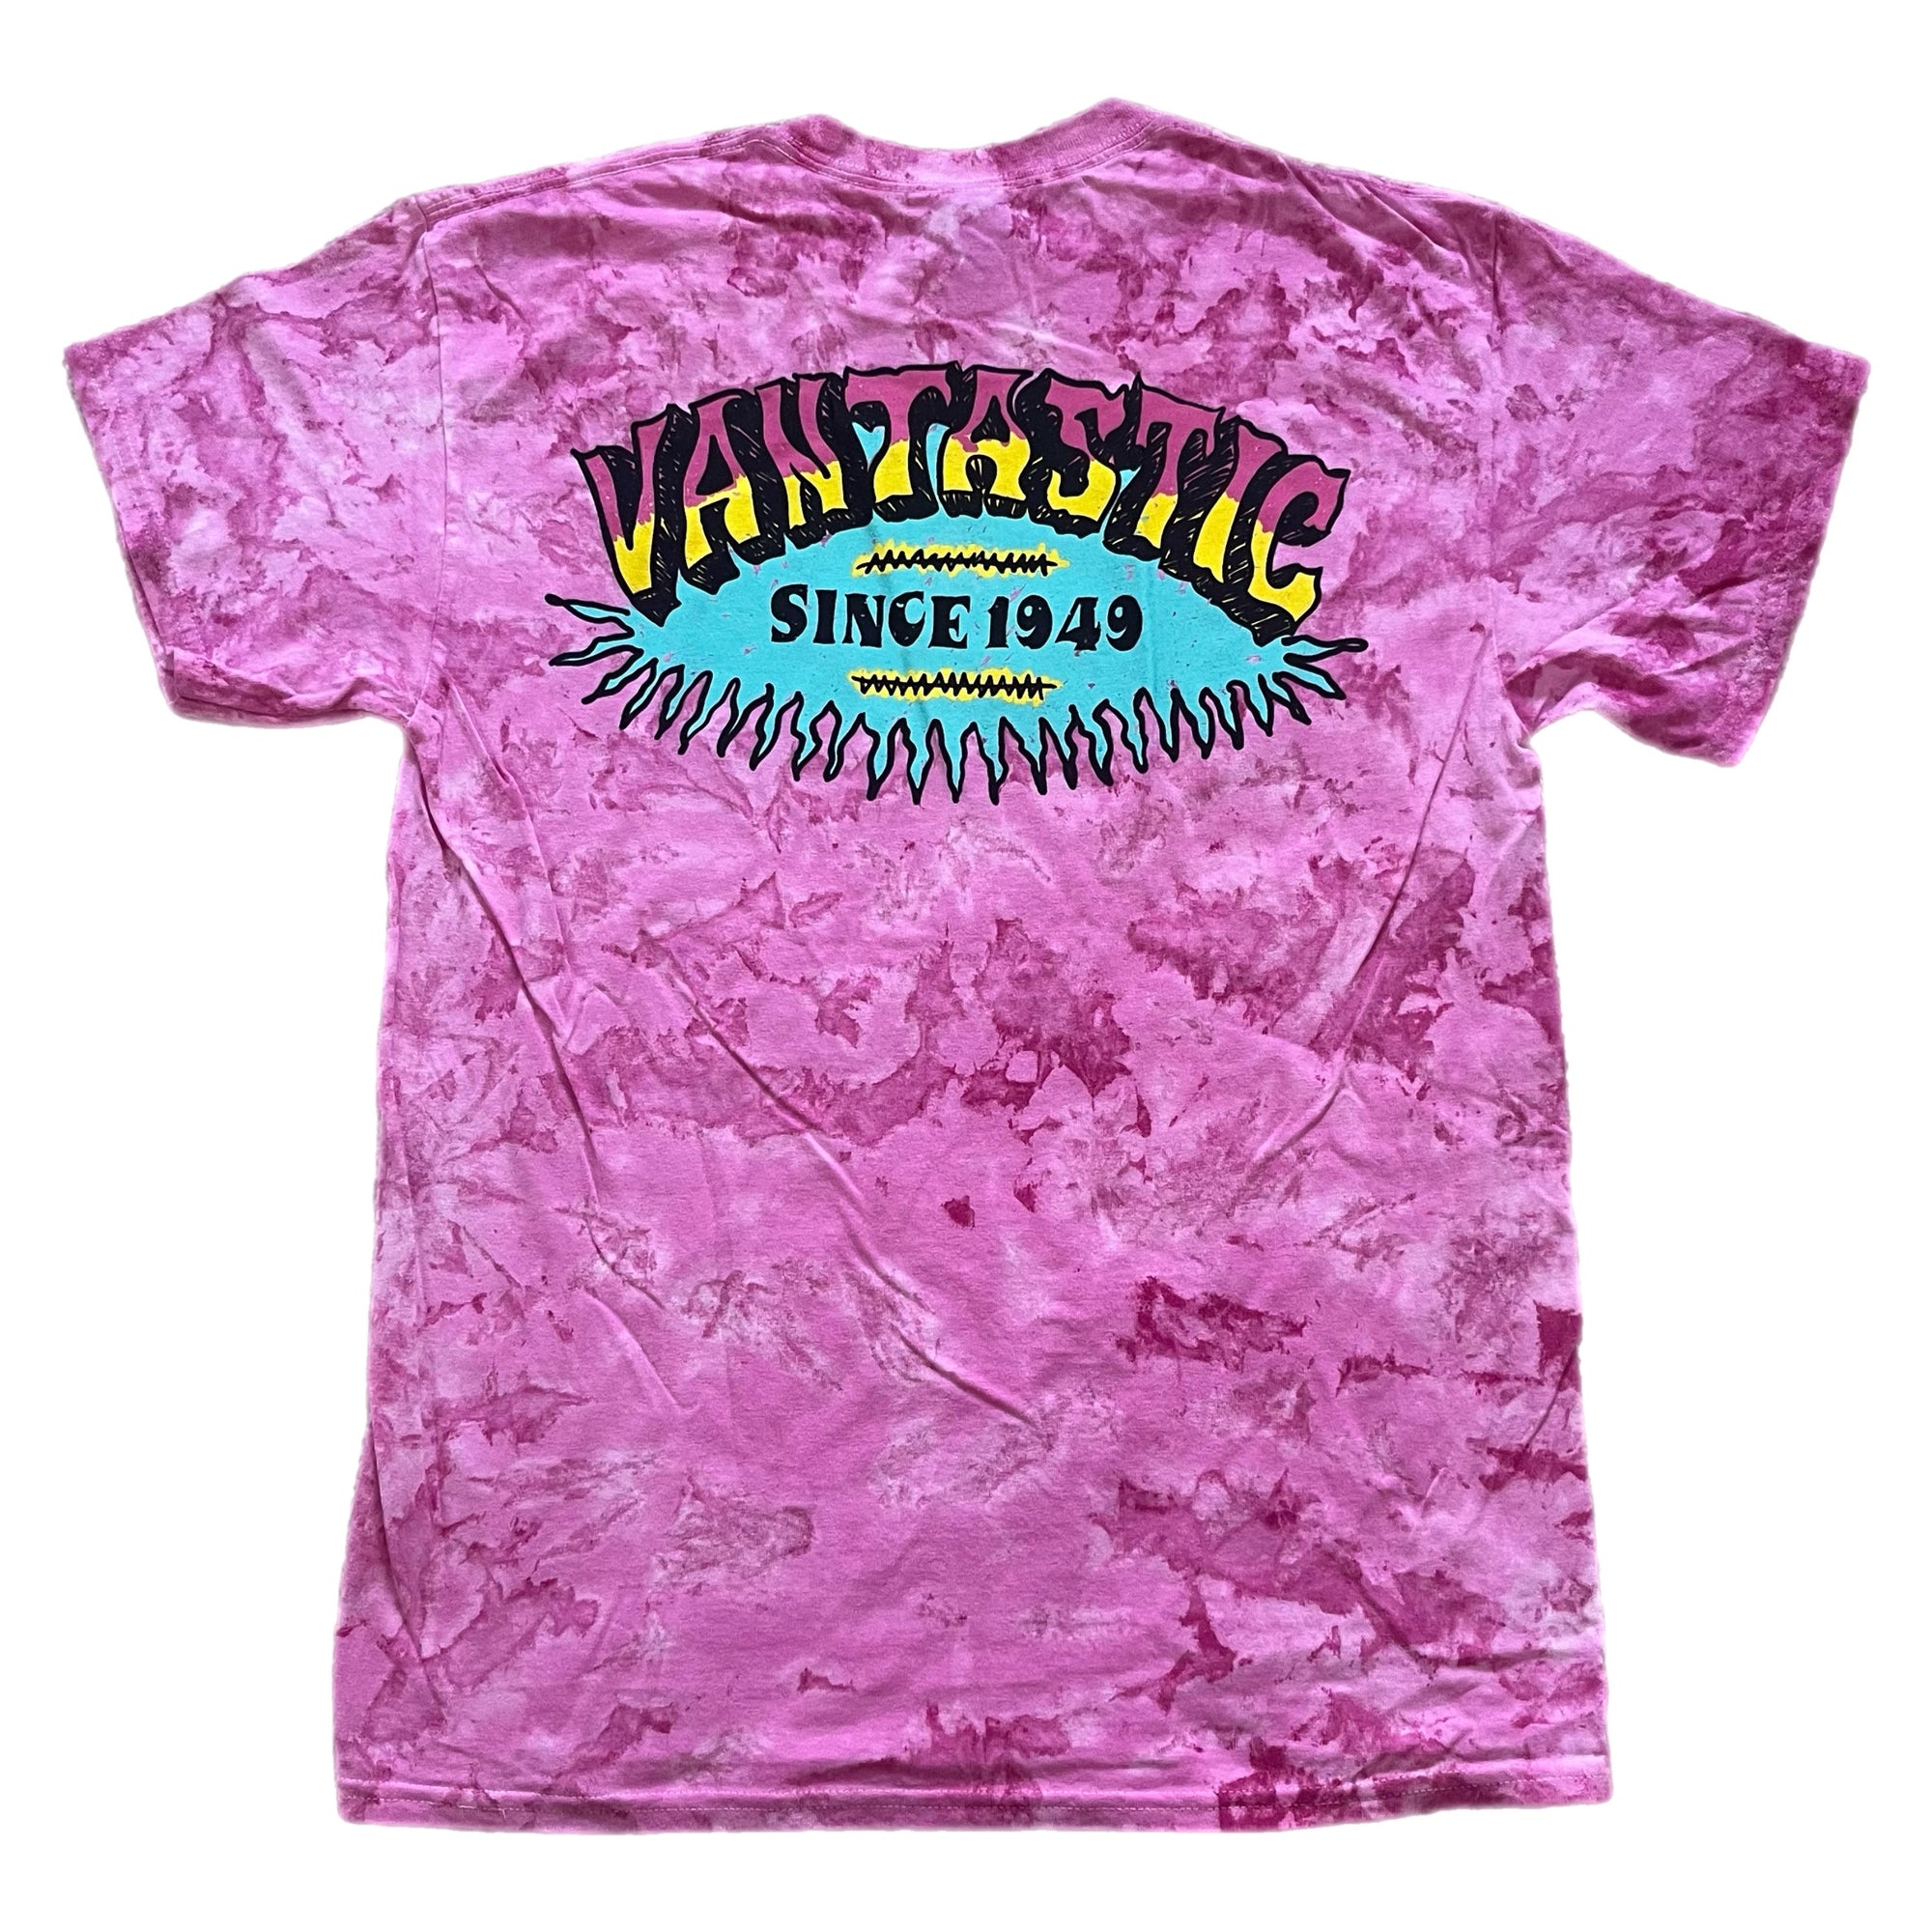 Tie-dye surf t-shirt - Pink Blaster Wash